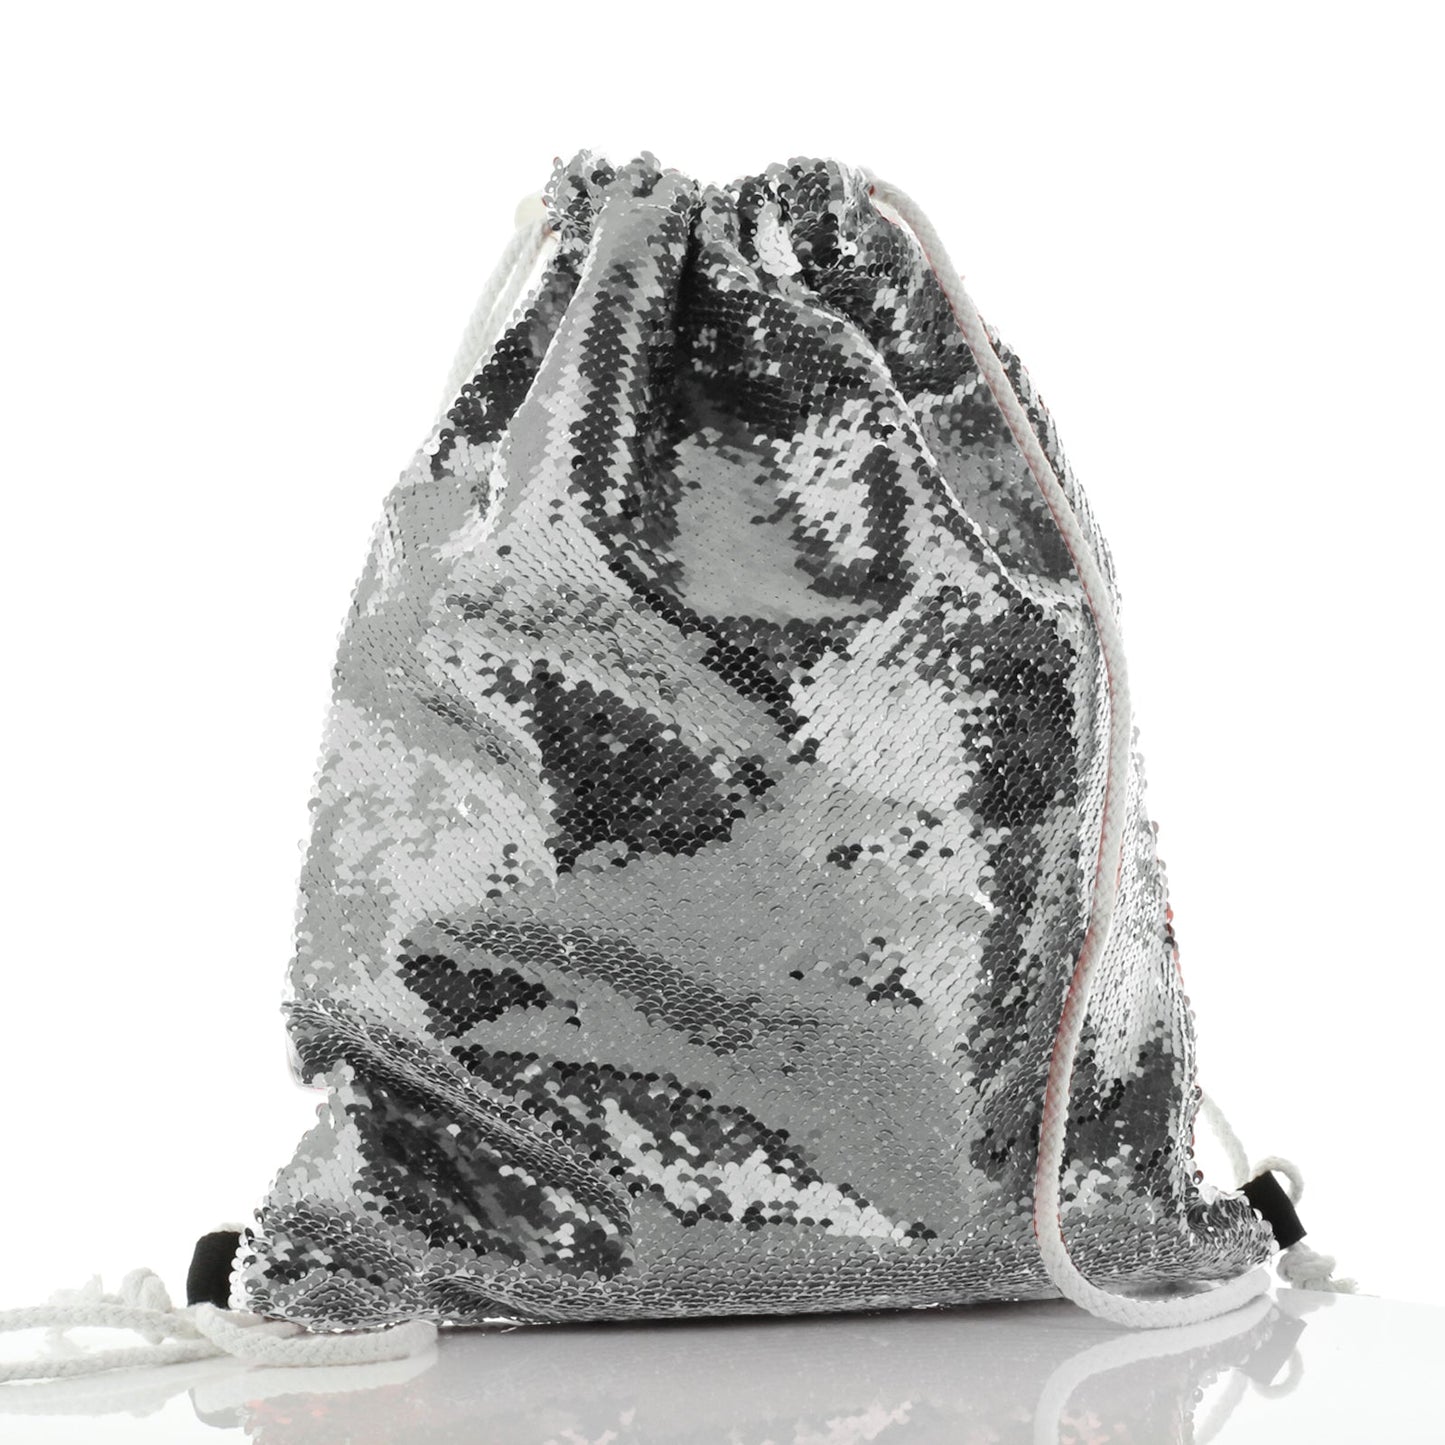 Personalisierter Pailletten-Rucksack mit Kordelzug, Schneeeule, blauer Schmetterling und niedlichem Text